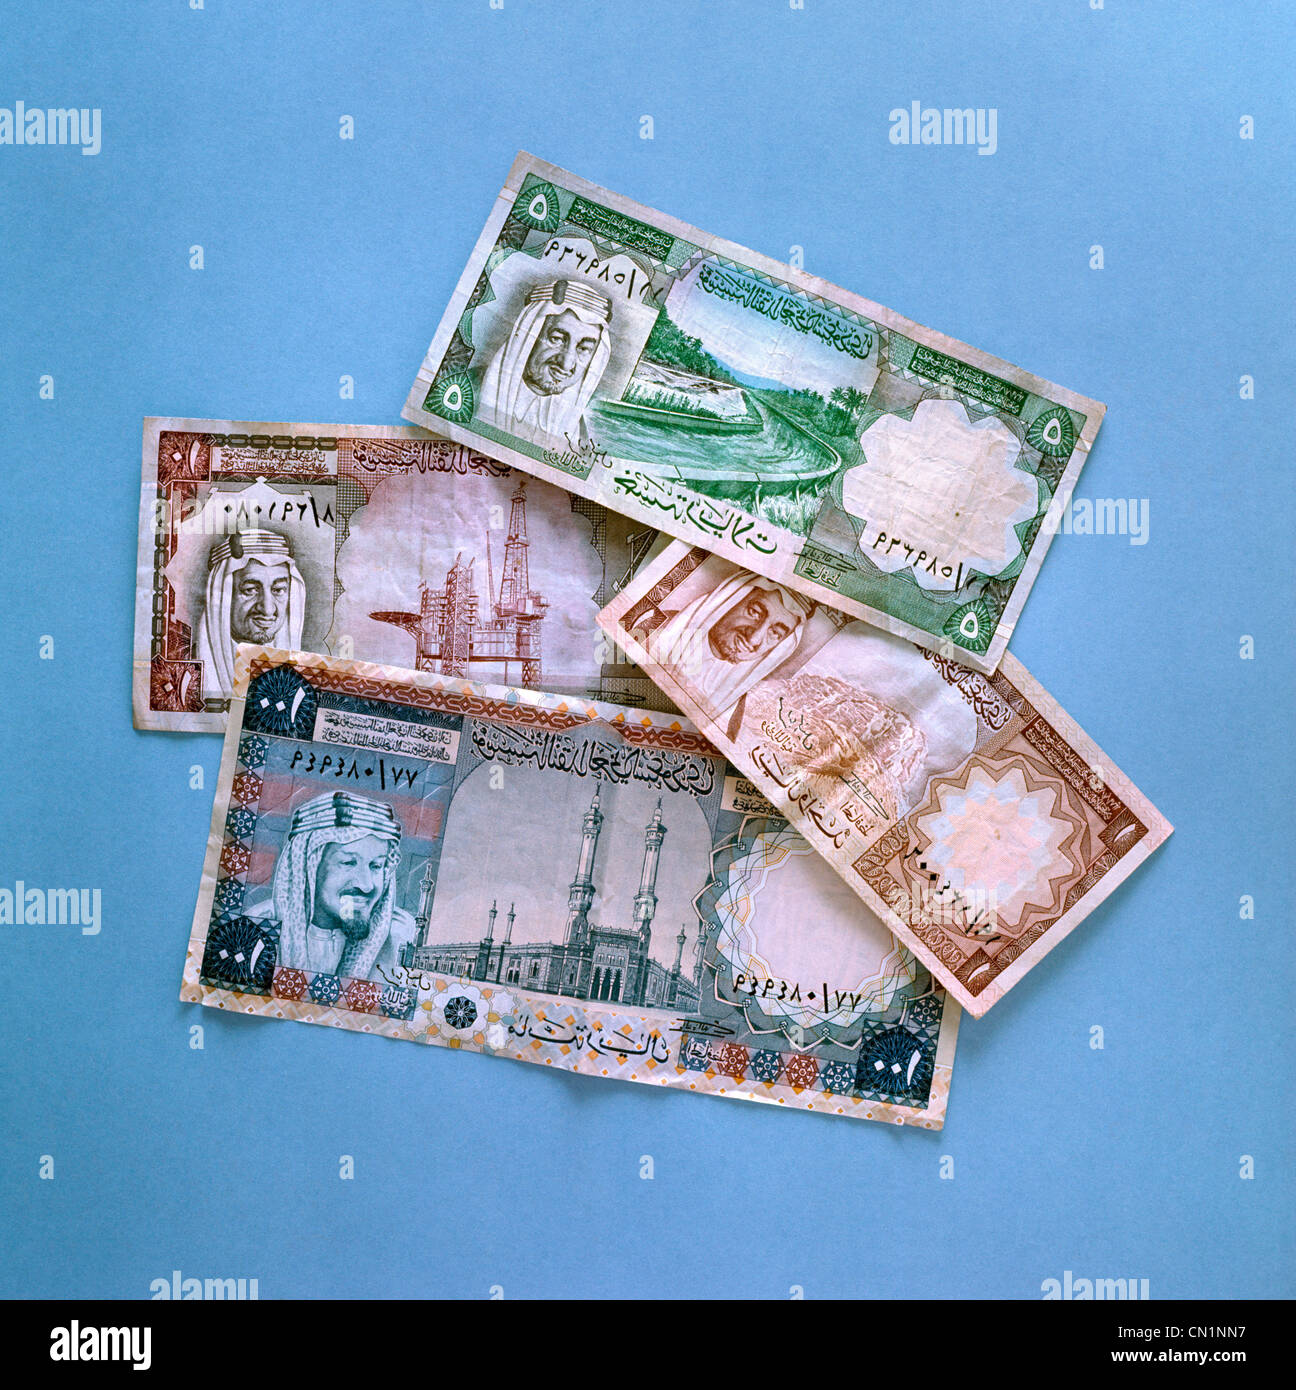 Arabia Riyals valuta Foto Stock